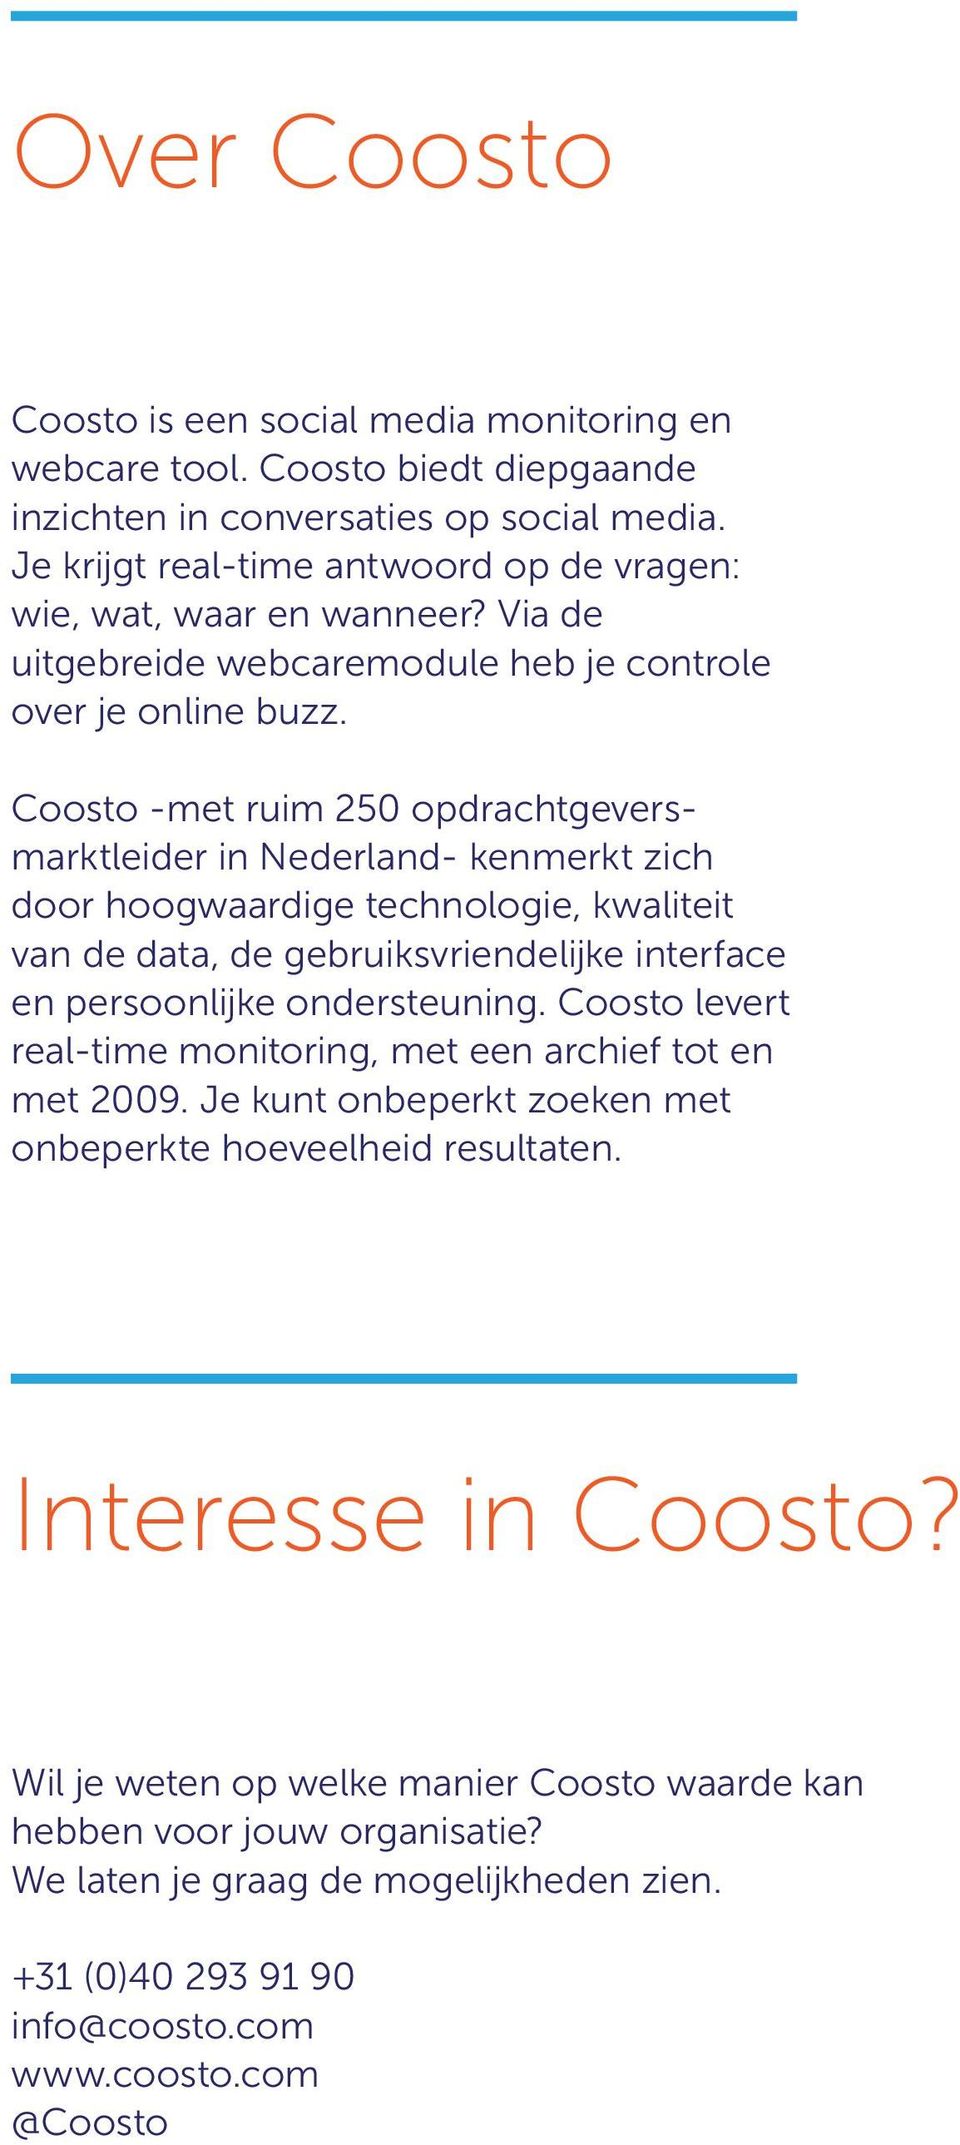 Coosto -met ruim 250 opdrachtgeversmarktleider in Nederland- kenmerkt zich door hoogwaardige technologie, kwaliteit van de data, de gebruiksvriendelijke interface en persoonlijke ondersteuning.